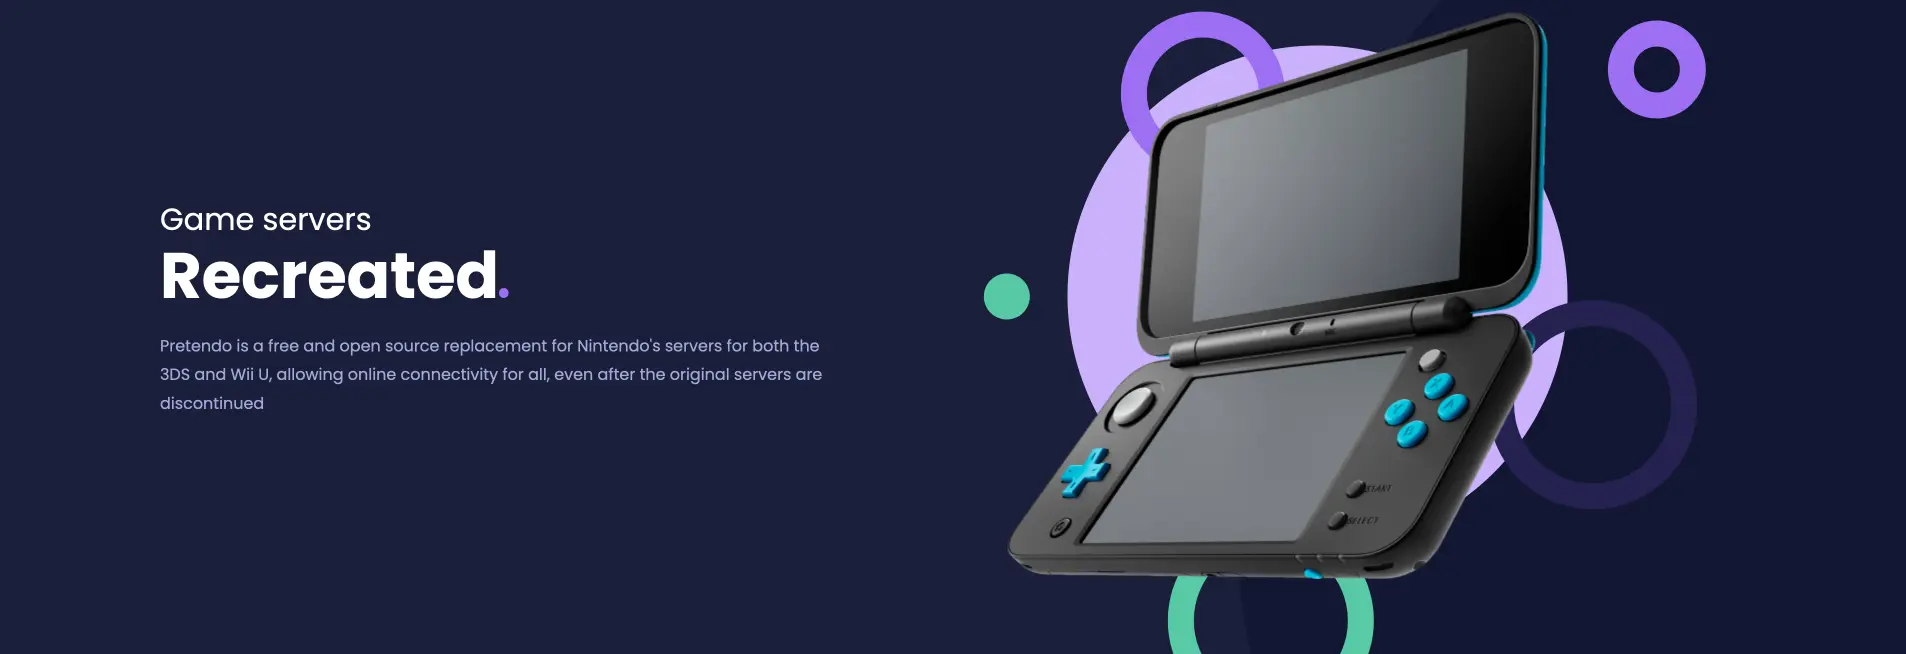 L’avenir du jeu en ligne sur Wii U et 3DS est assuré grâce à Pretendo Network